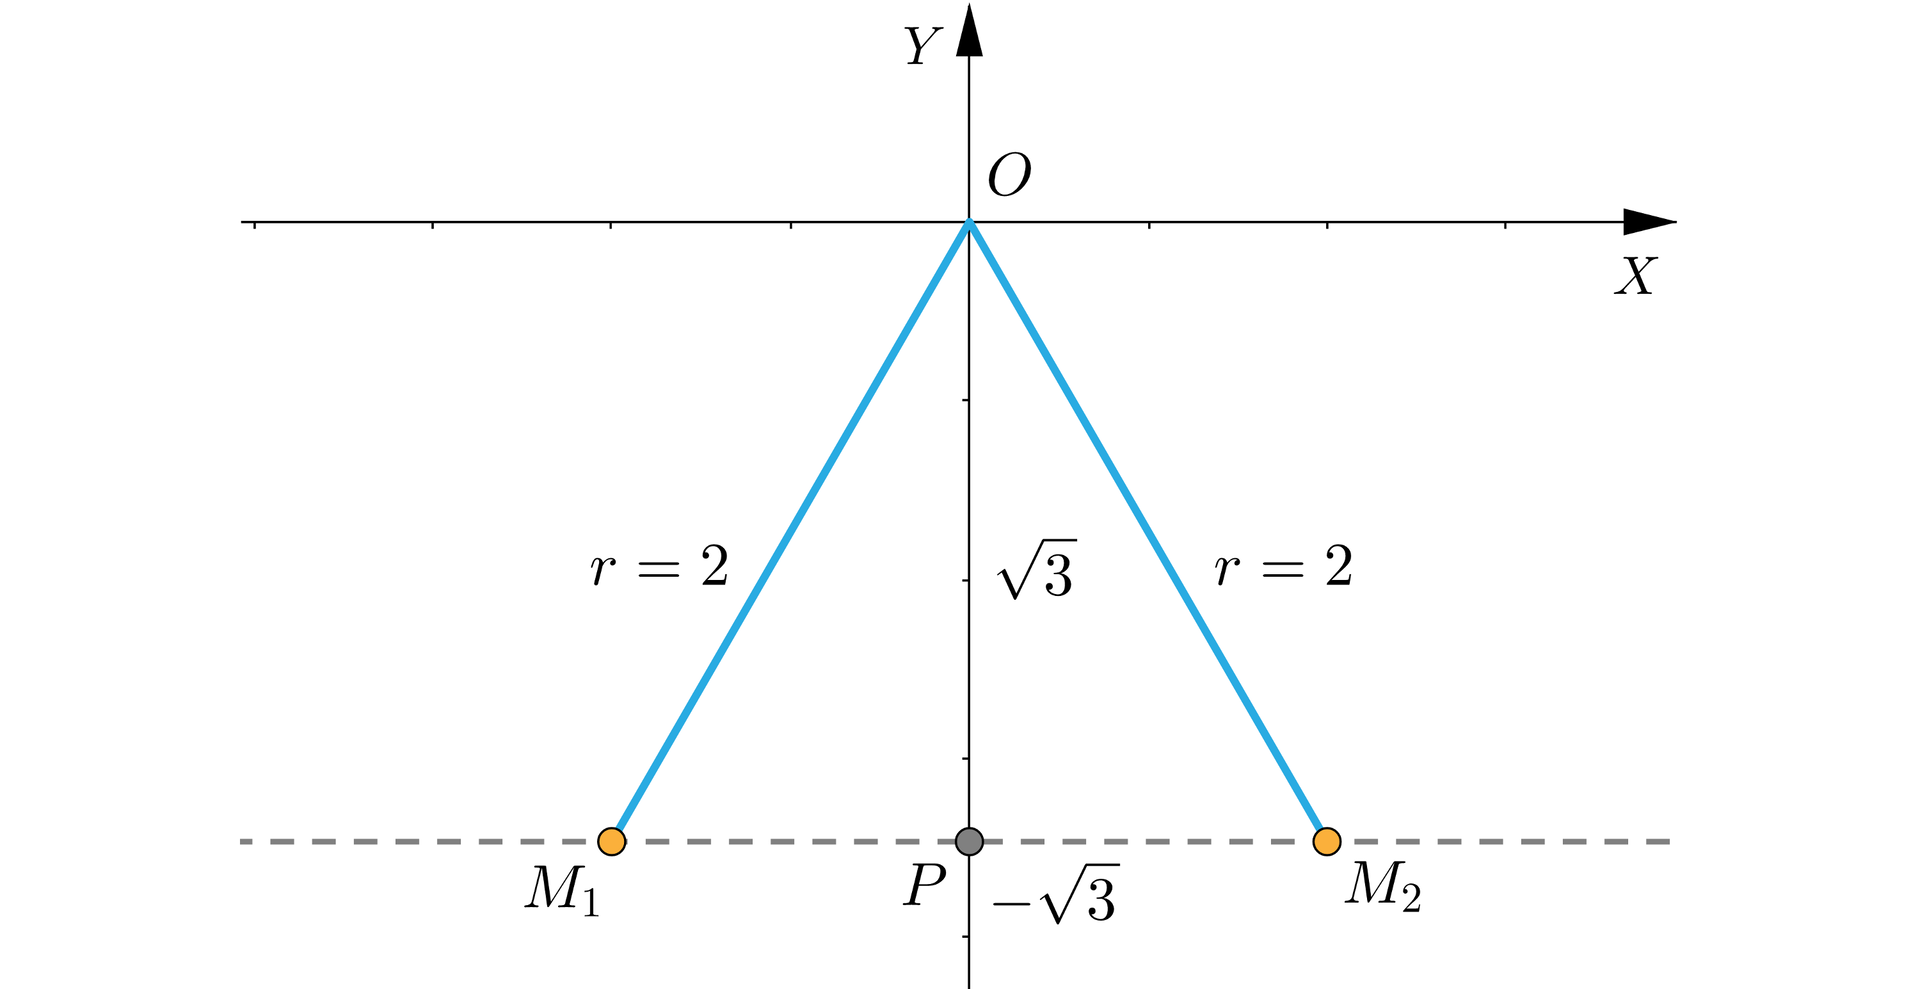 Ilustracja przedstawia układ współrzędnych z poziomą osią X oraz pionową Y. Rysunek skupia się głównie na trzeciej i czwartej ćwiartce układu. Punkt O to początek układu. Poprowadzone są z niego dwa odcinki, tworzące kąty ostre z ujemną półosią O Y. Odcinek O M 1 znajduje się w trzeciej ćwiartce układu i ma długoś r równą 2. Odcinek O M 2 znajduje się w czwartej ćwiartce układu i również ma długość r równą dwa. Przez punkty M 1 i M 2 linią przerywaną poprowadzona jest pozioma prosta, która jest prostopadła do osi Y i przecina ją w punkcie P o współrzędnych 0, minus pierwiastek z trzech. Odcinek O P leży więc na osi Y i ma długość równą pierwiastek z trzech.